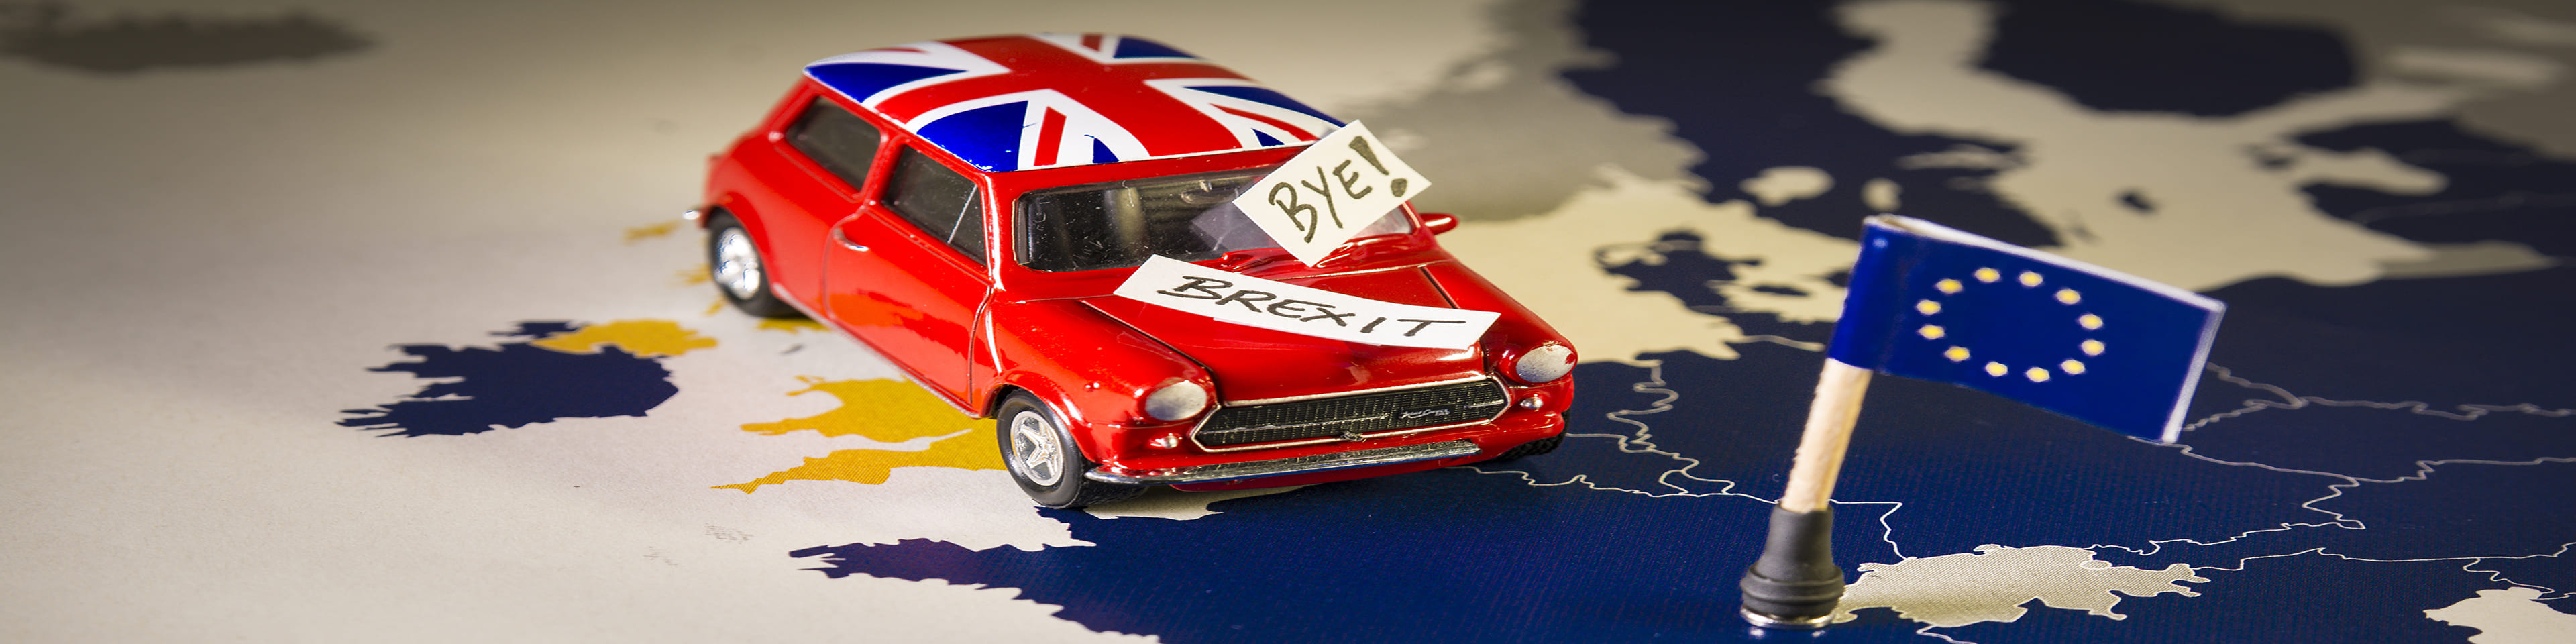 Rode Mini rijdt over landkaart van Engeland